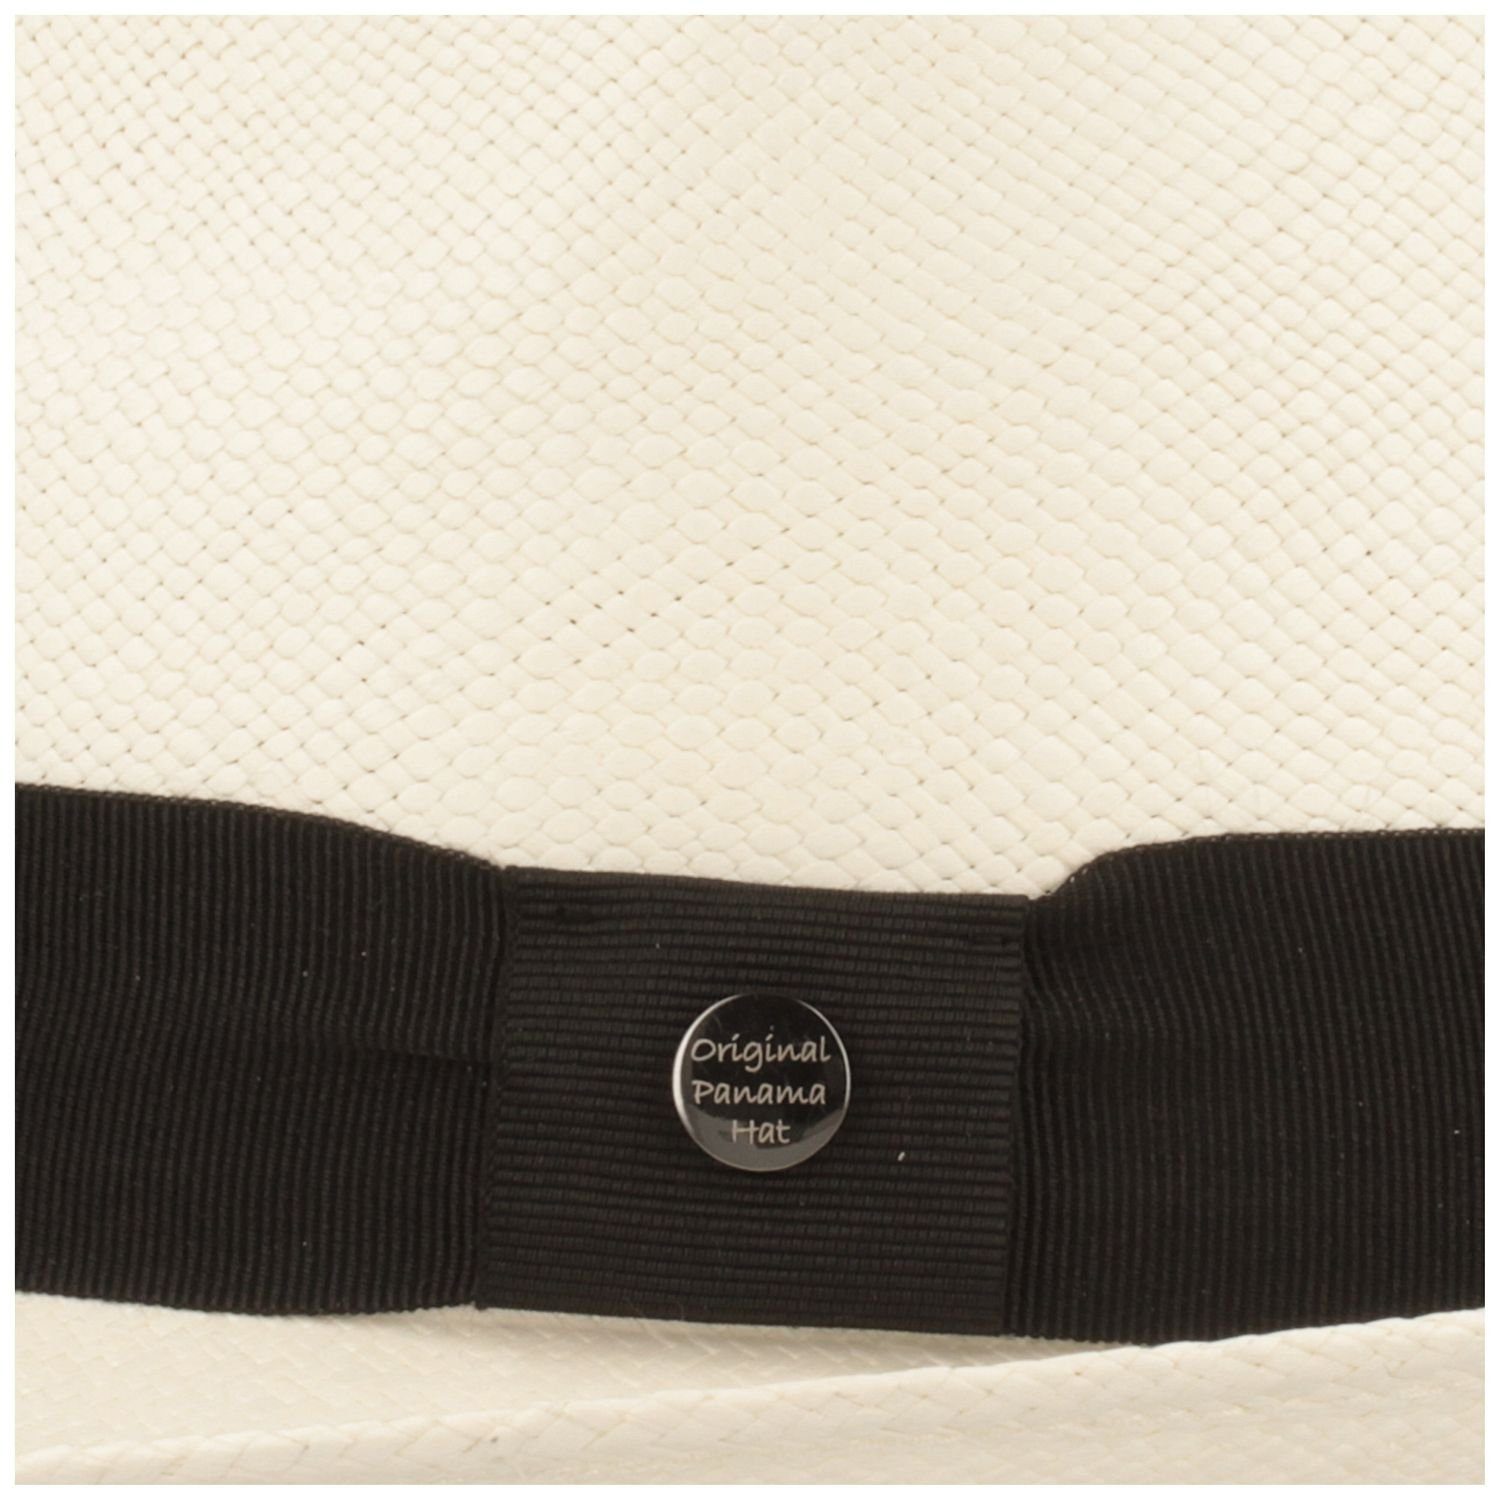 UV-Schutz Breiter Strohhut Panama Trilby 50+ mit Garnitur weiss moderner Hut